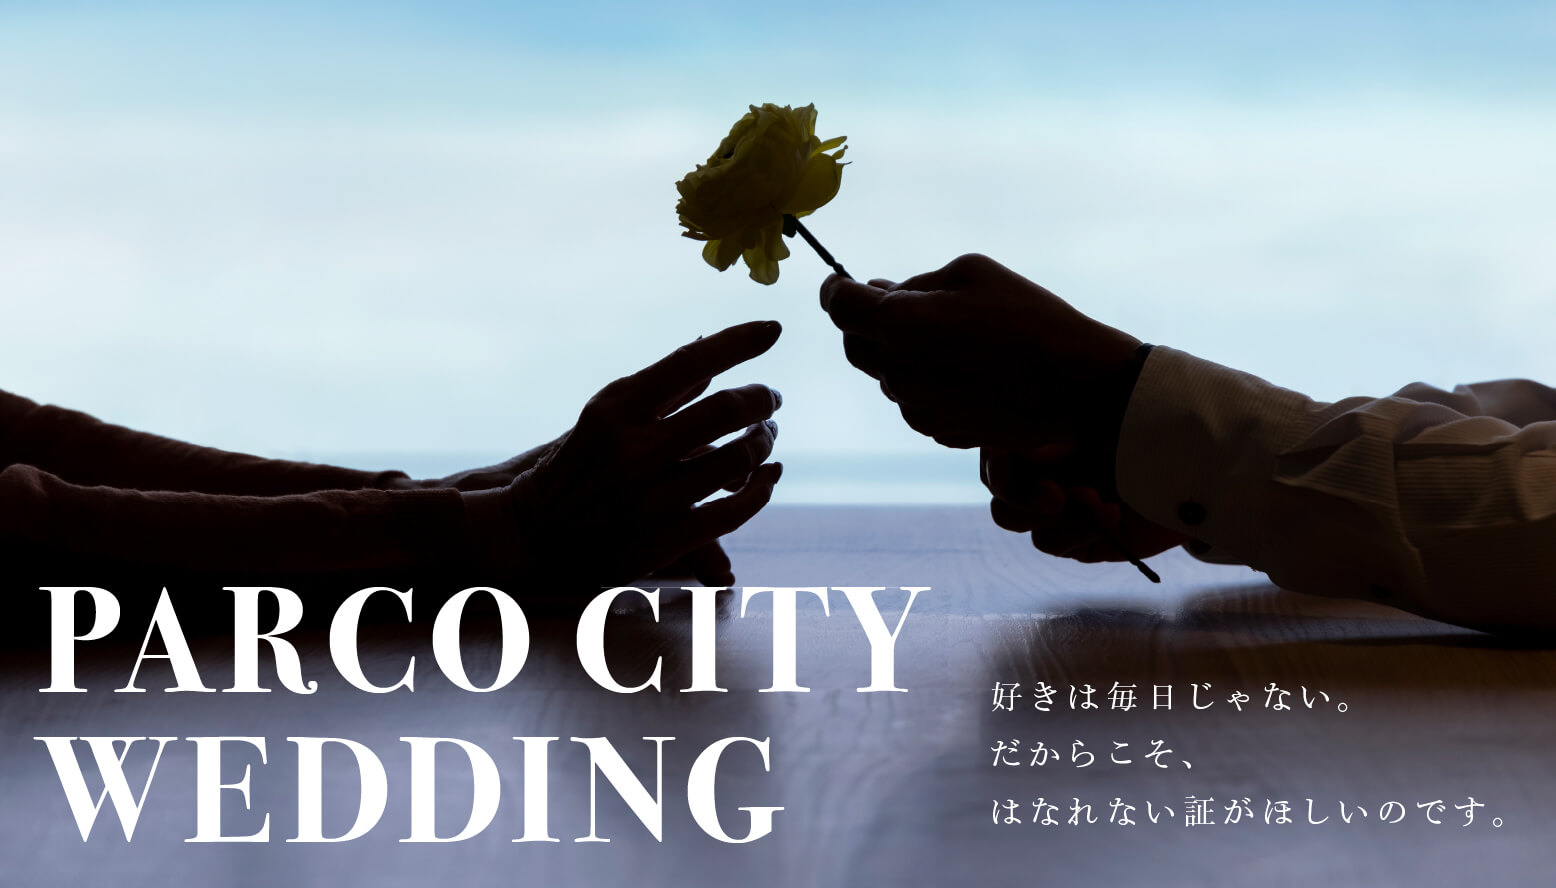 『パルコシティウェディング』パルコシティが結婚準備のお手伝い | PARCO CITY - パルコシティ